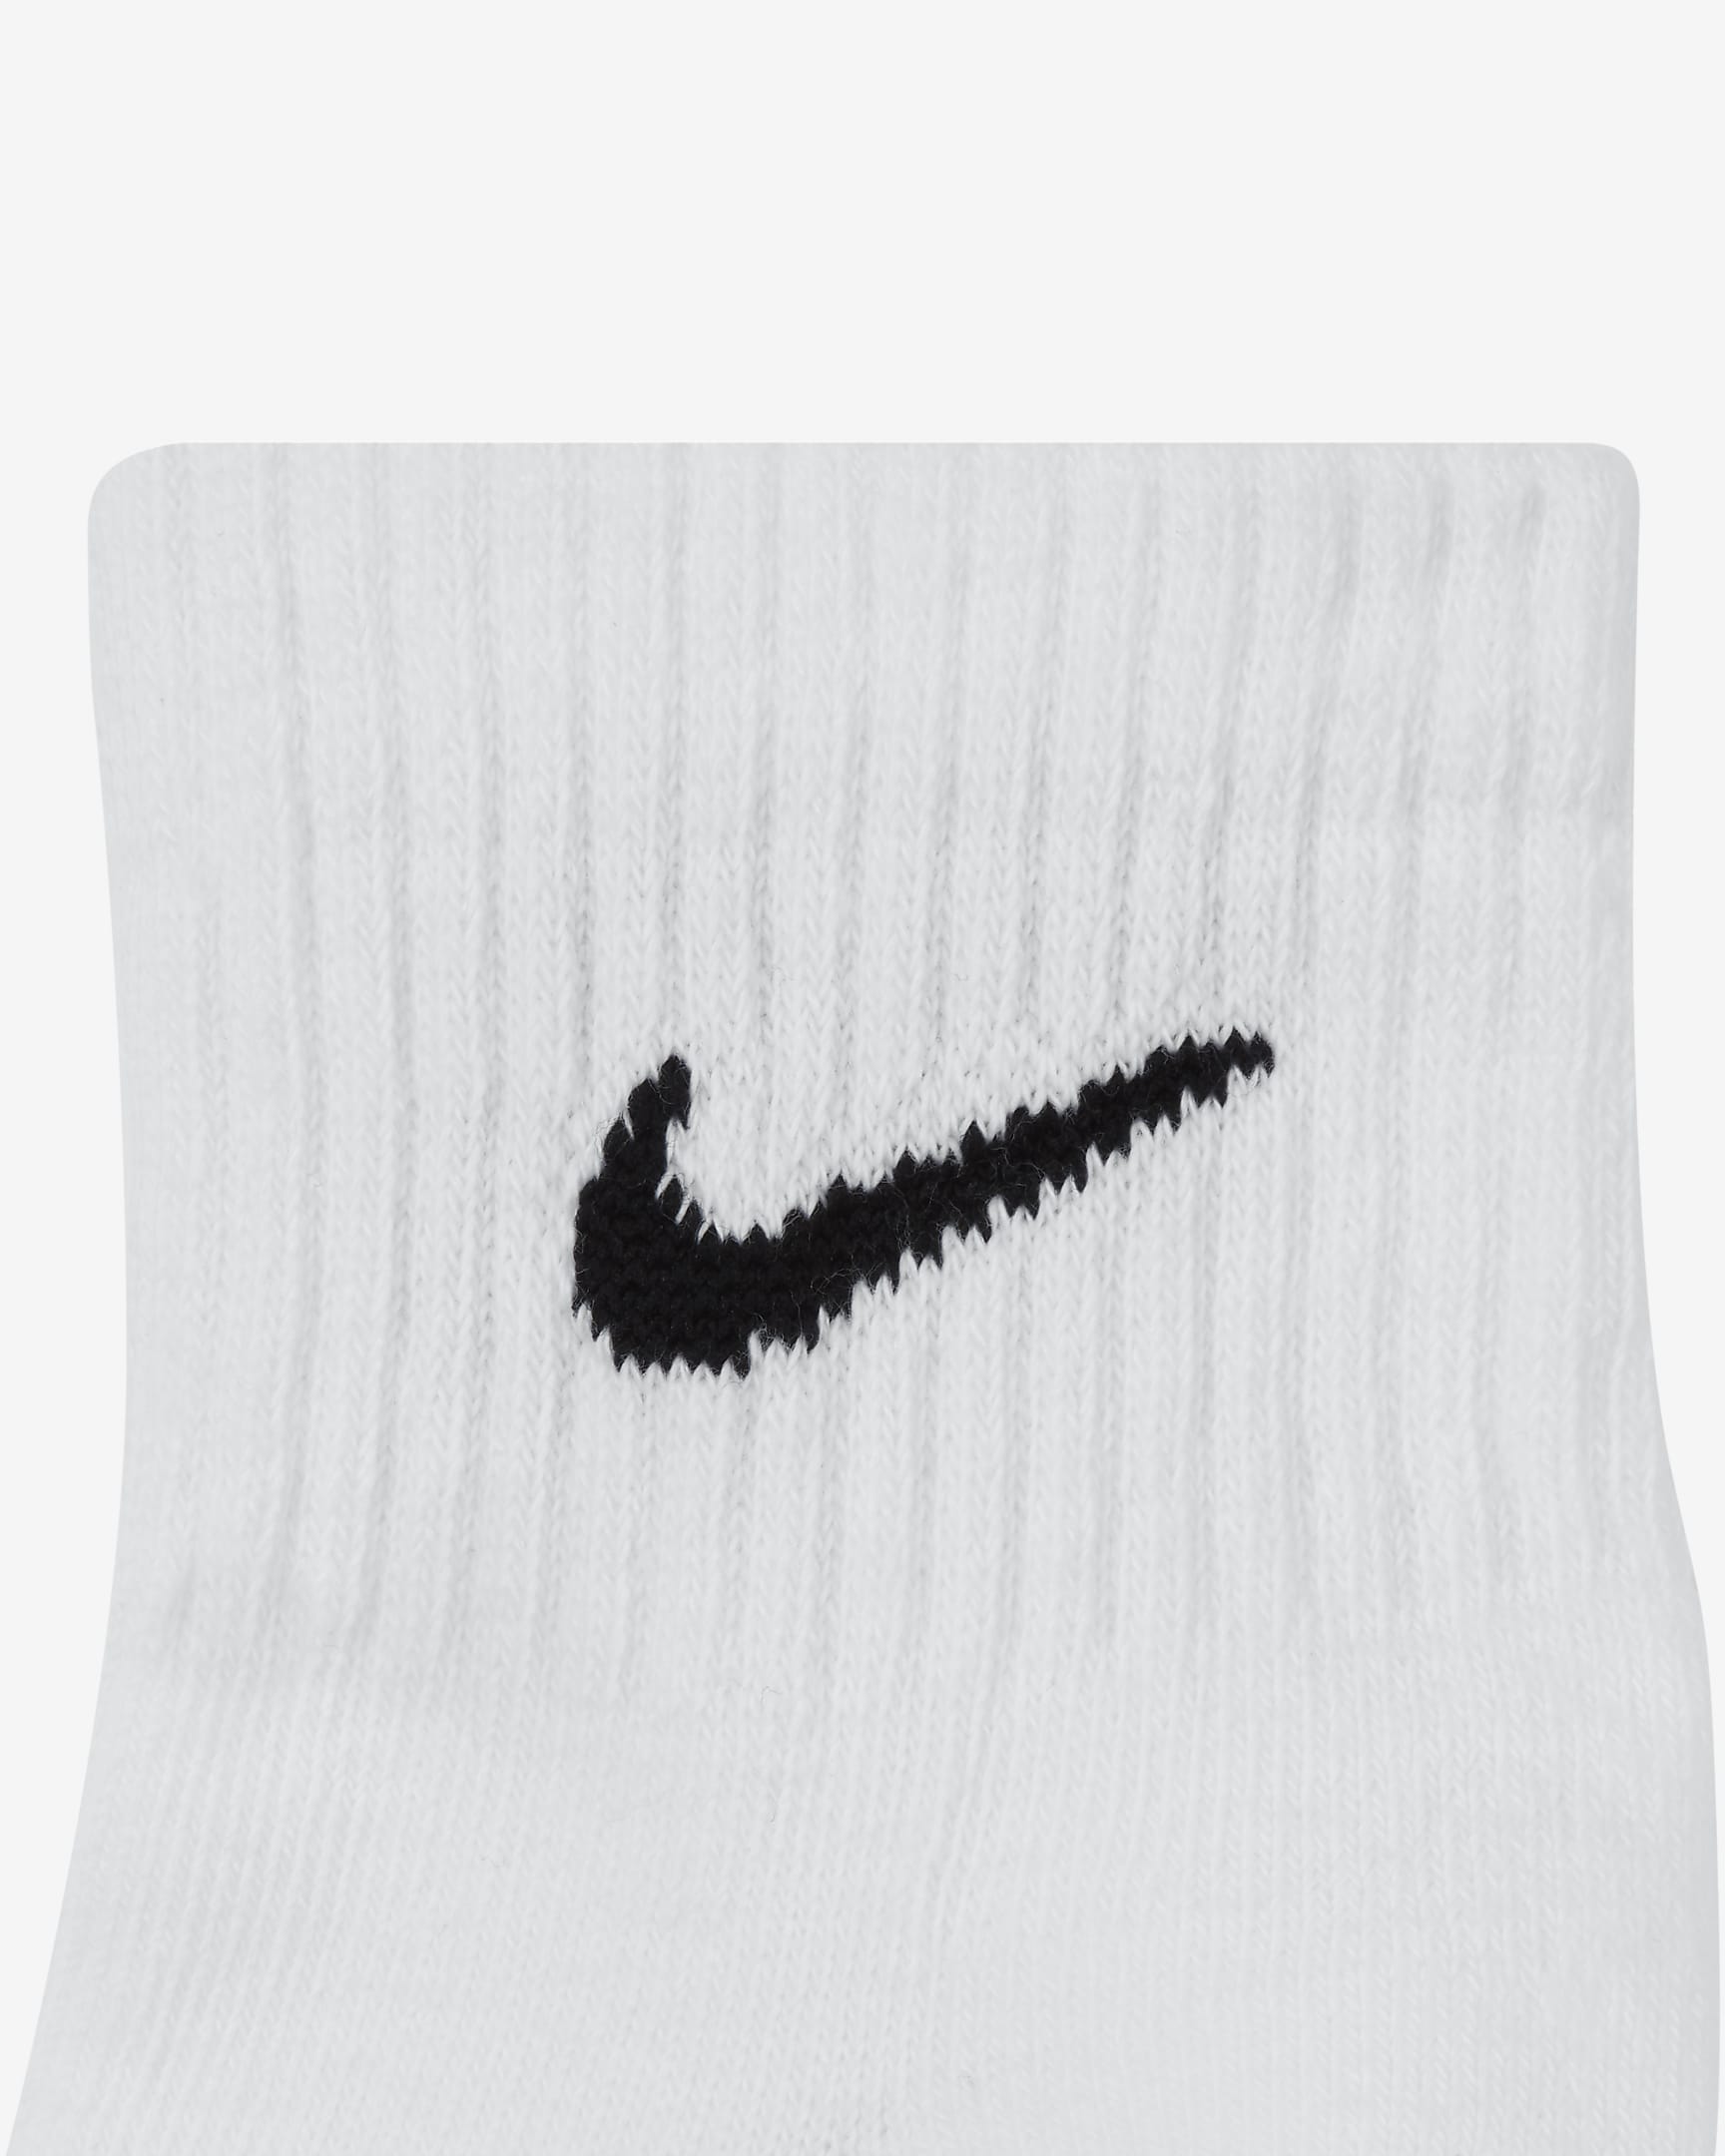 Nike Everyday Cushioned Training Ankle Socks (3 Pairs). Nike UK